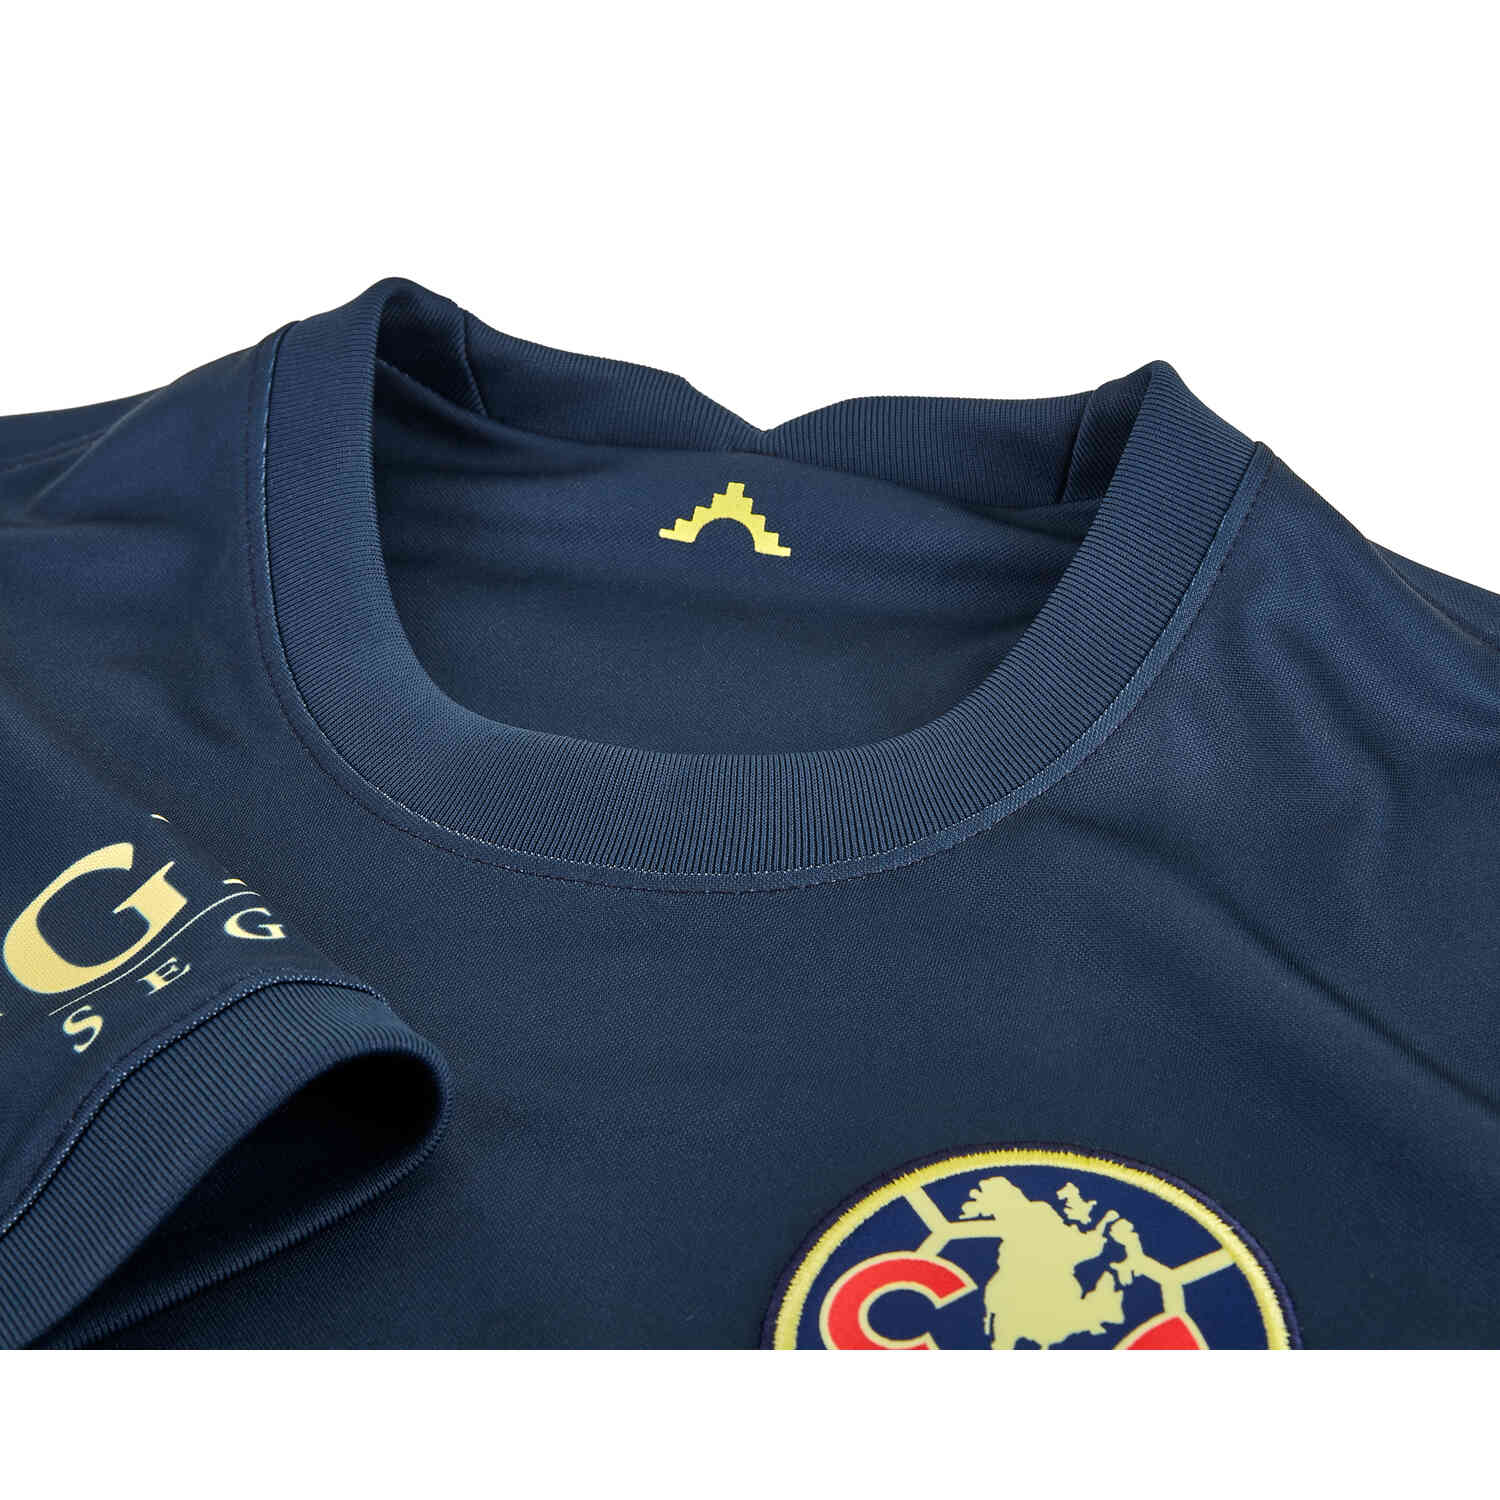 2021-22 Club America Away Soccer Jersey Short Sleeve Men T-Shirt  S-XXL 